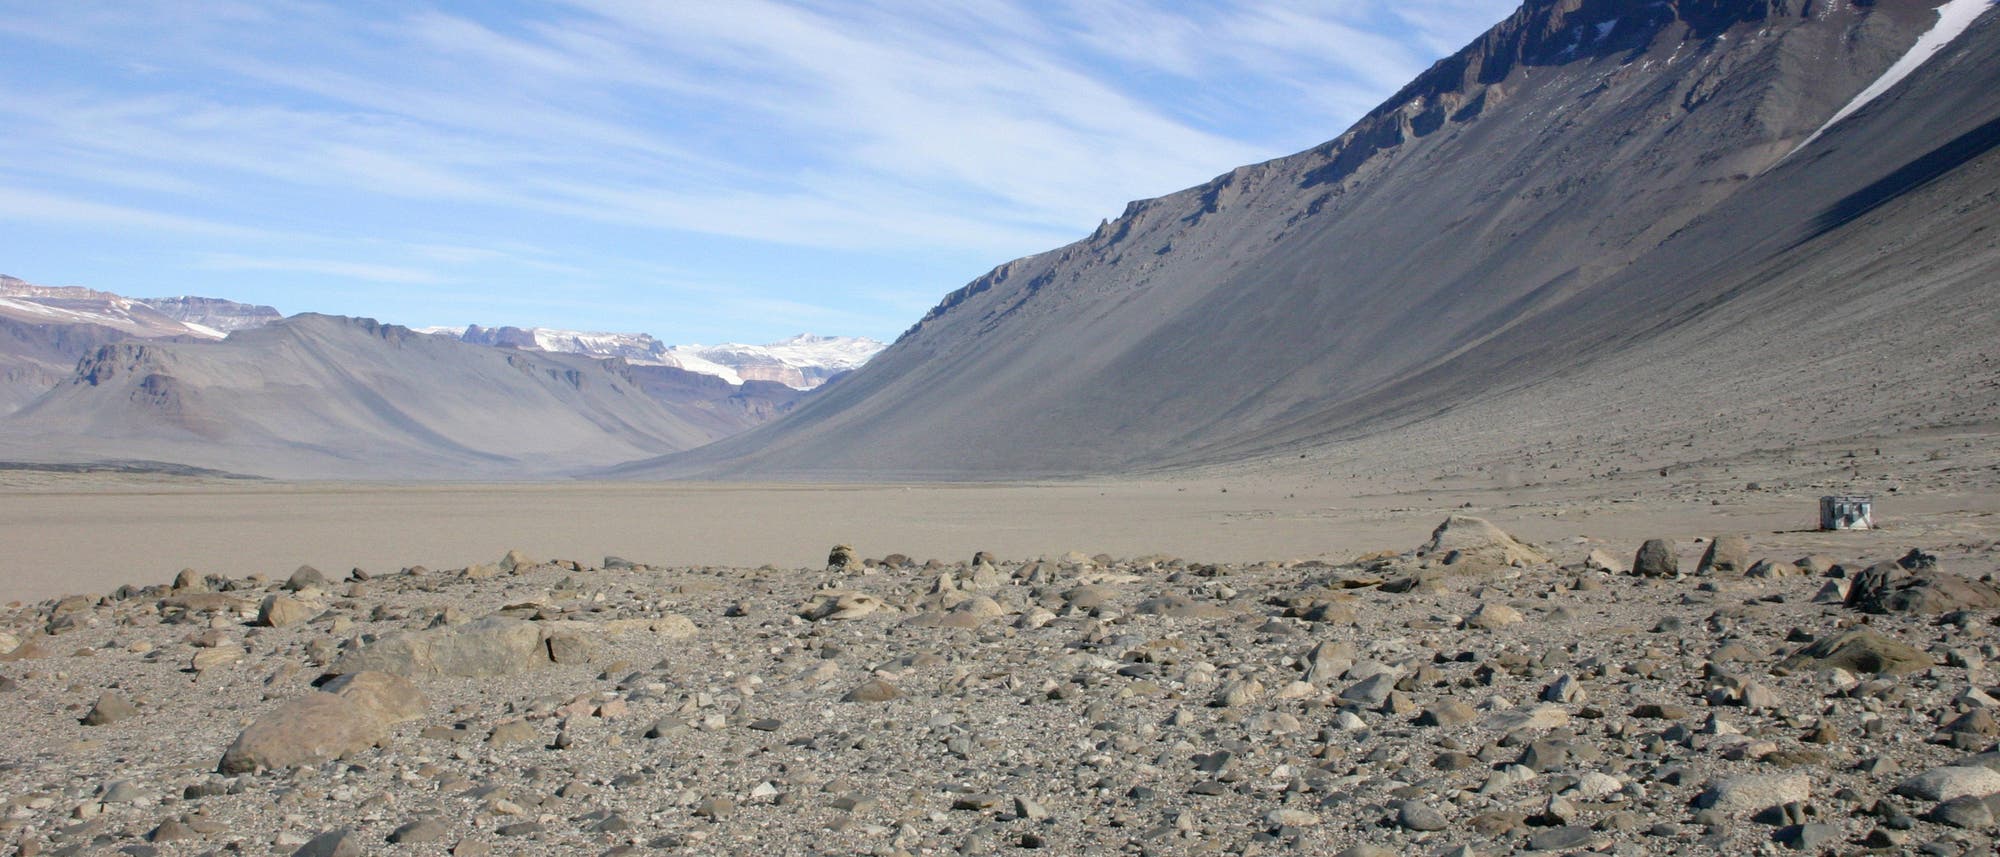 Blick auf eines der Trockentäler: Eine Mondlandschaft aus Geröll, eingefasst von Bergrücken